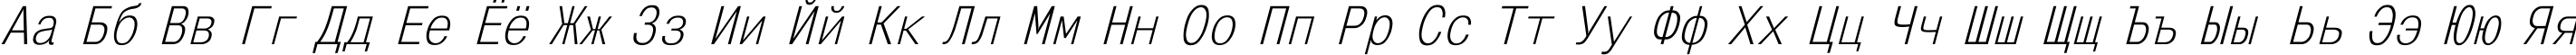 Пример написания русского алфавита шрифтом MonoCondensed Italic